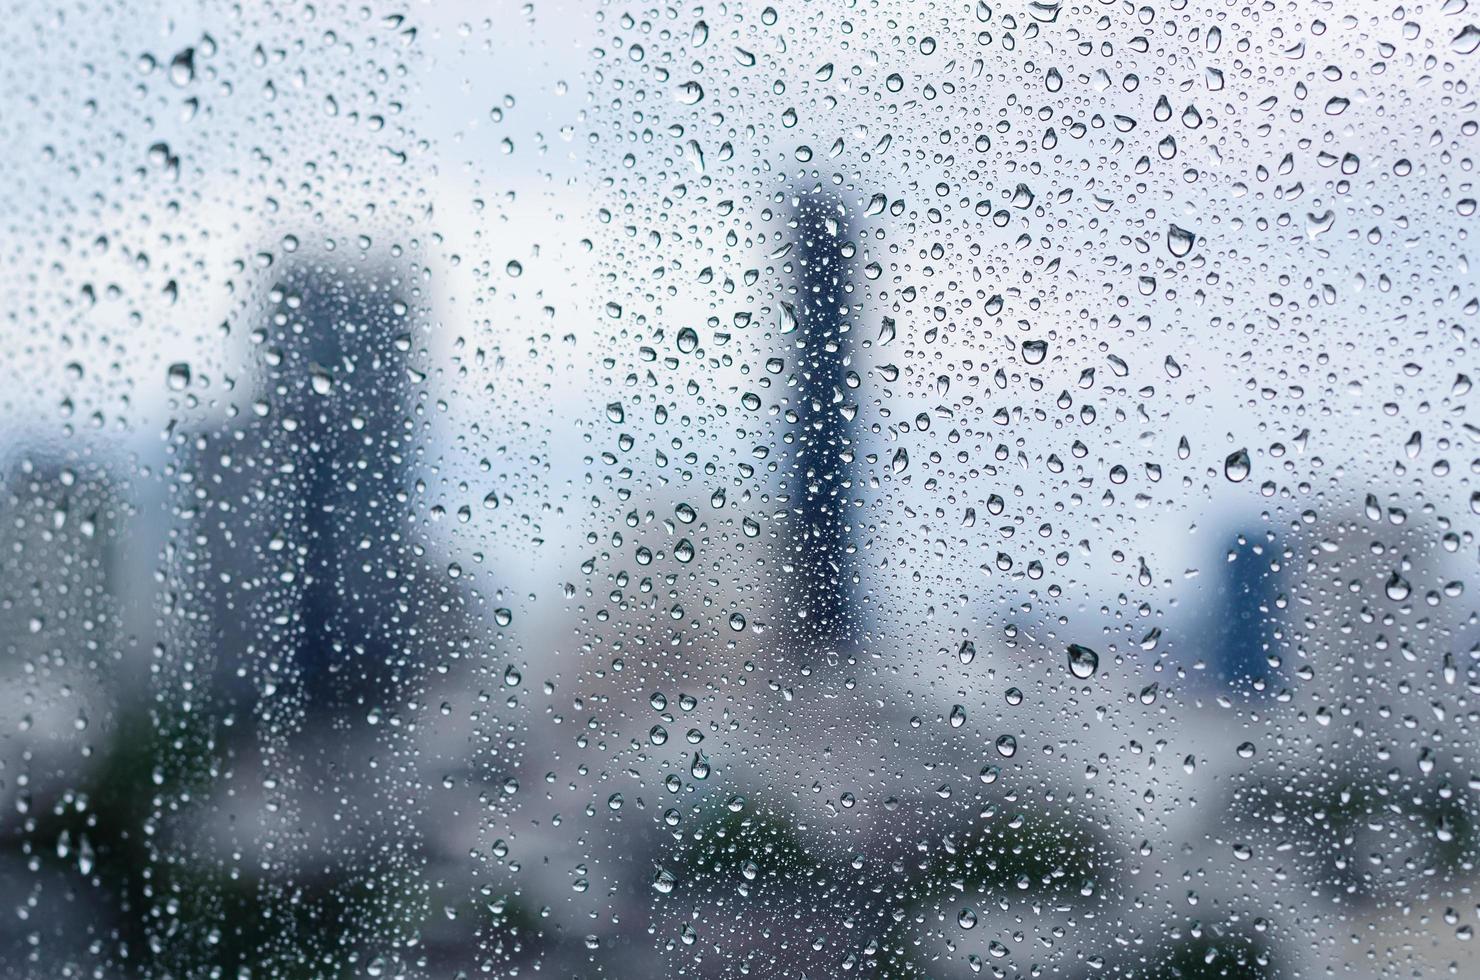 regndroppe på glasfönstret på dagtid i monsunsäsongen med suddig bakgrund för stadsbyggnader. foto